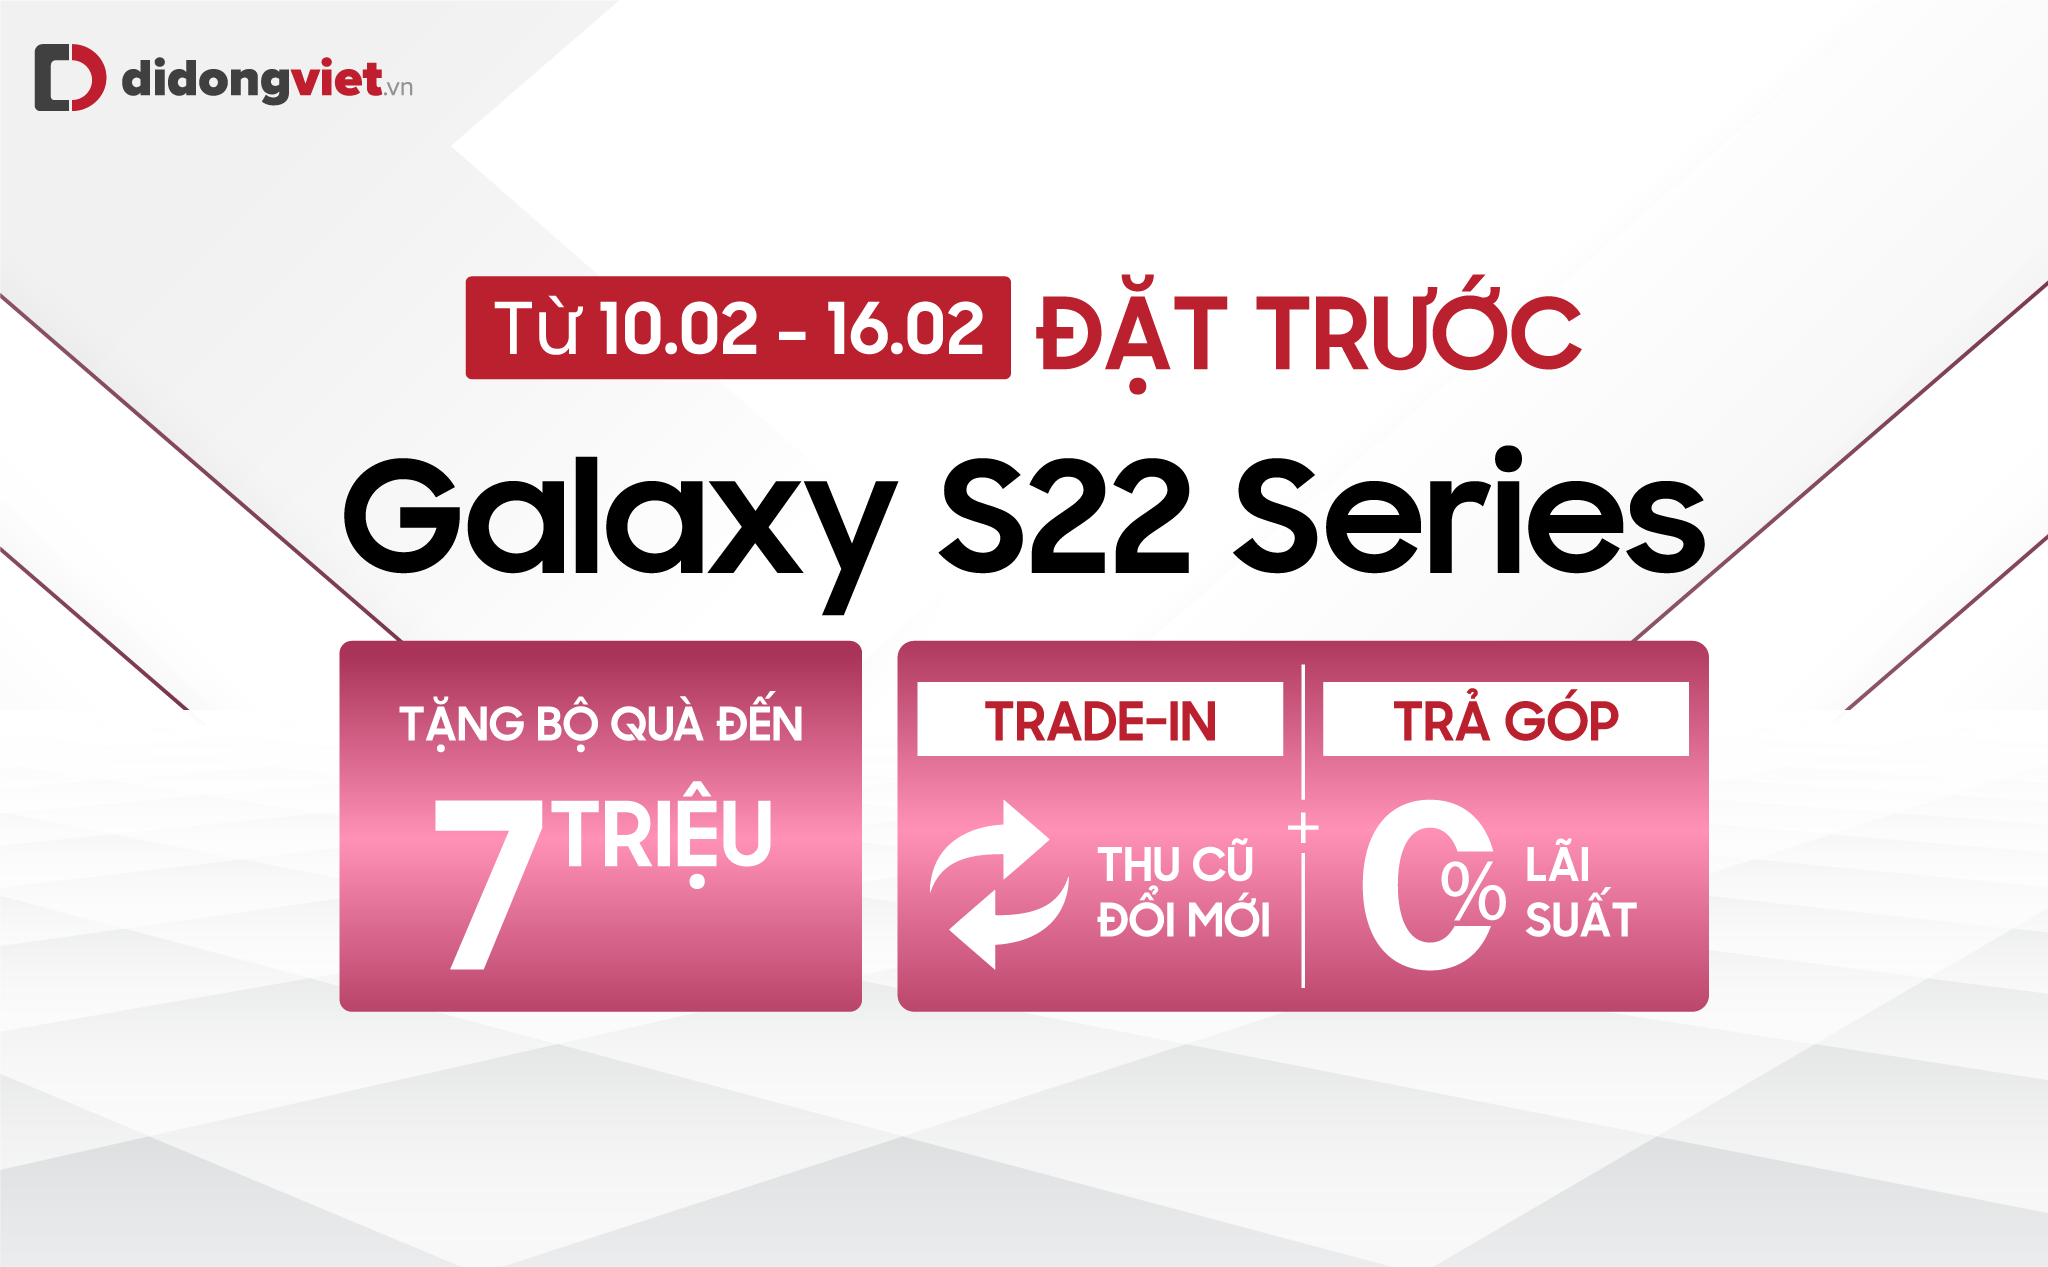 Đặt trước Samsung Galaxy S22 series nhận bộ quà khủng lên đến 7 triệu đồng tại Di Động Việt